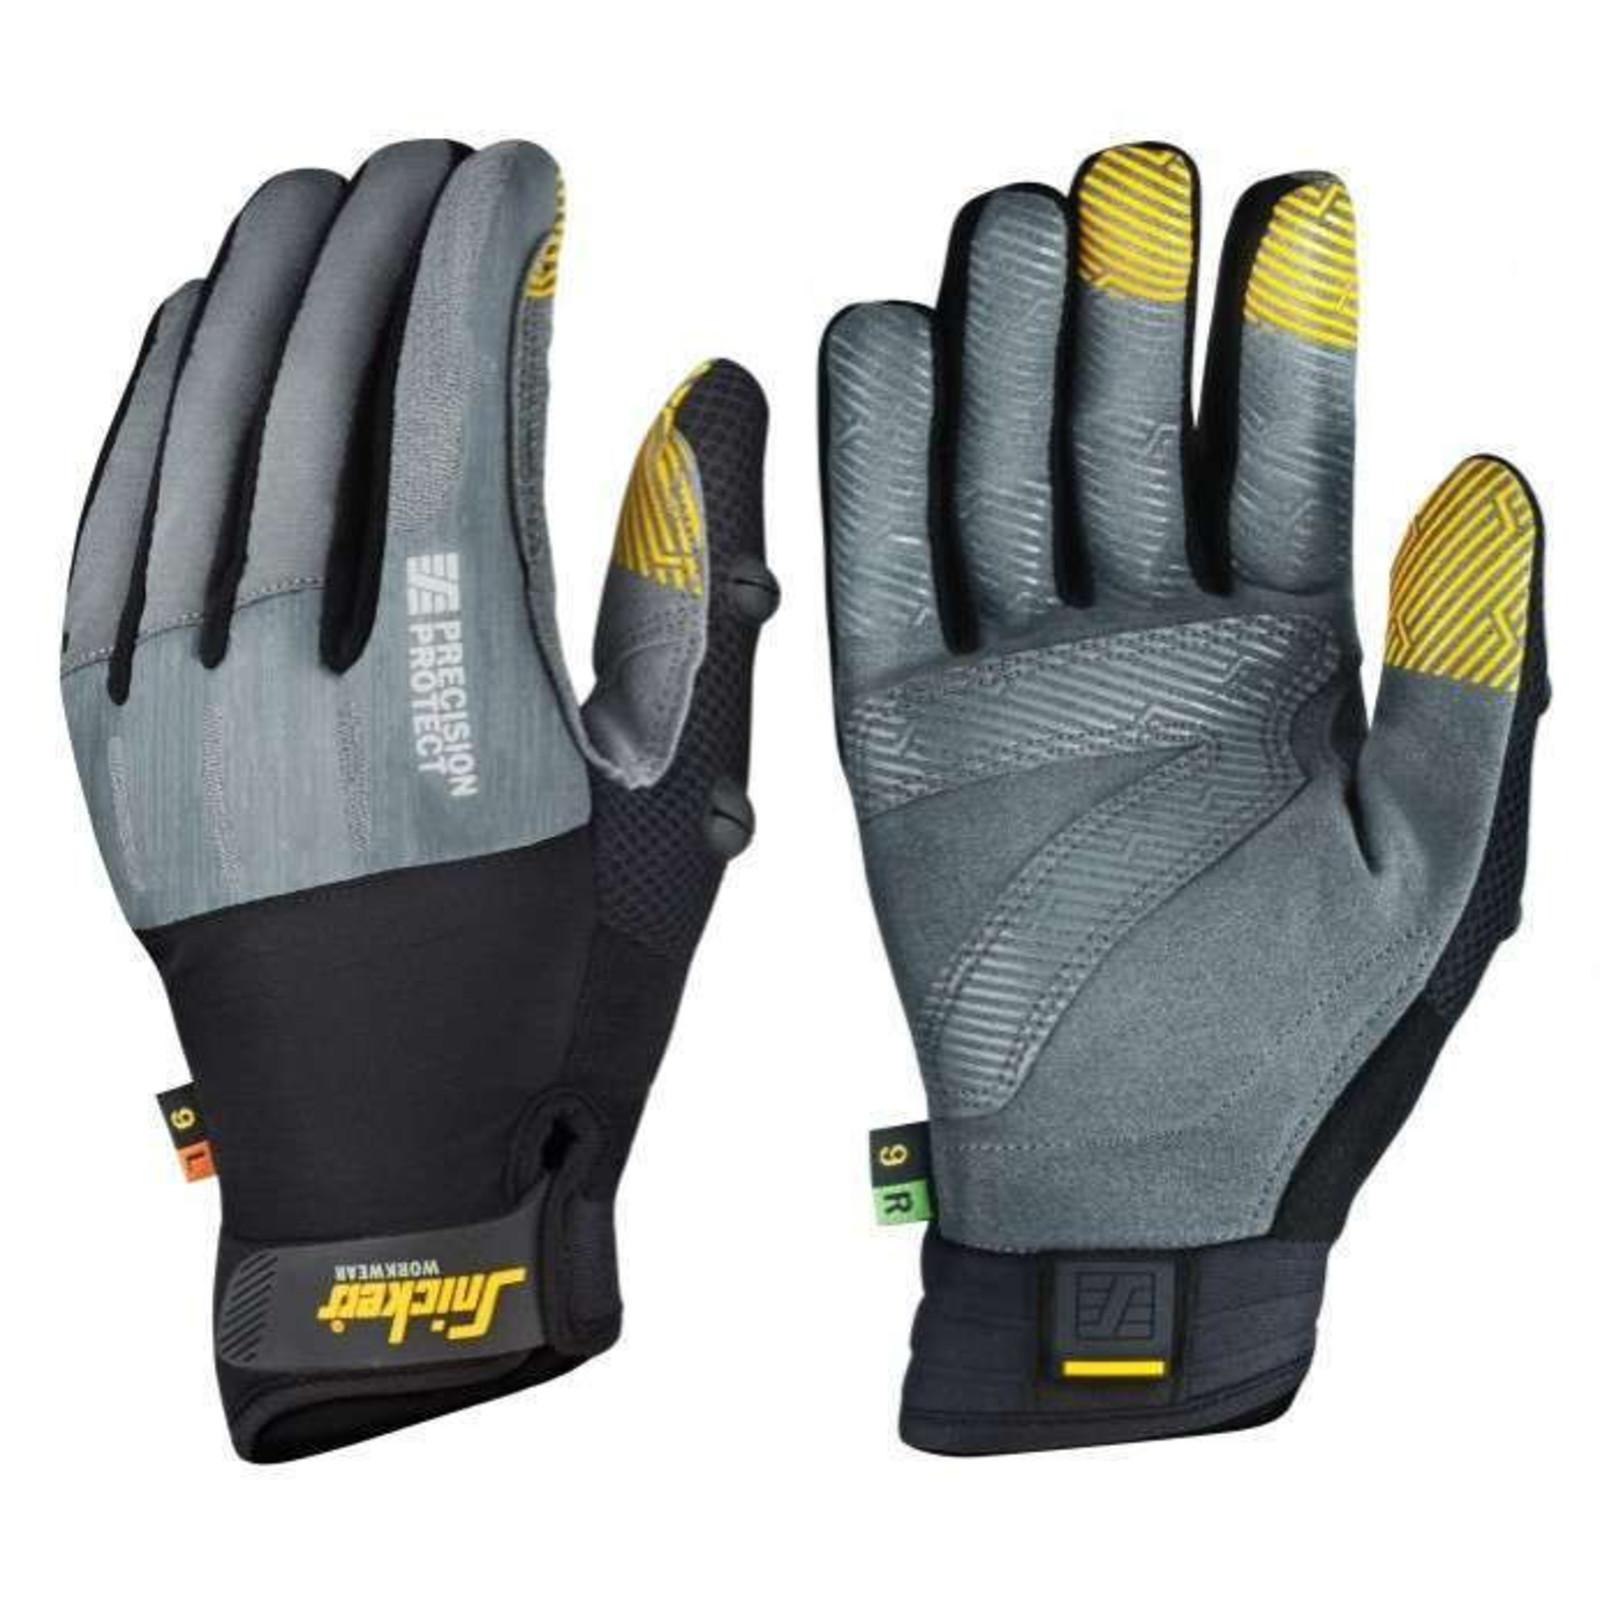 Pracovné rukavice Snickers® Precision Protect kombinované - veľkosť: 9/L, farba: sivá/čierna